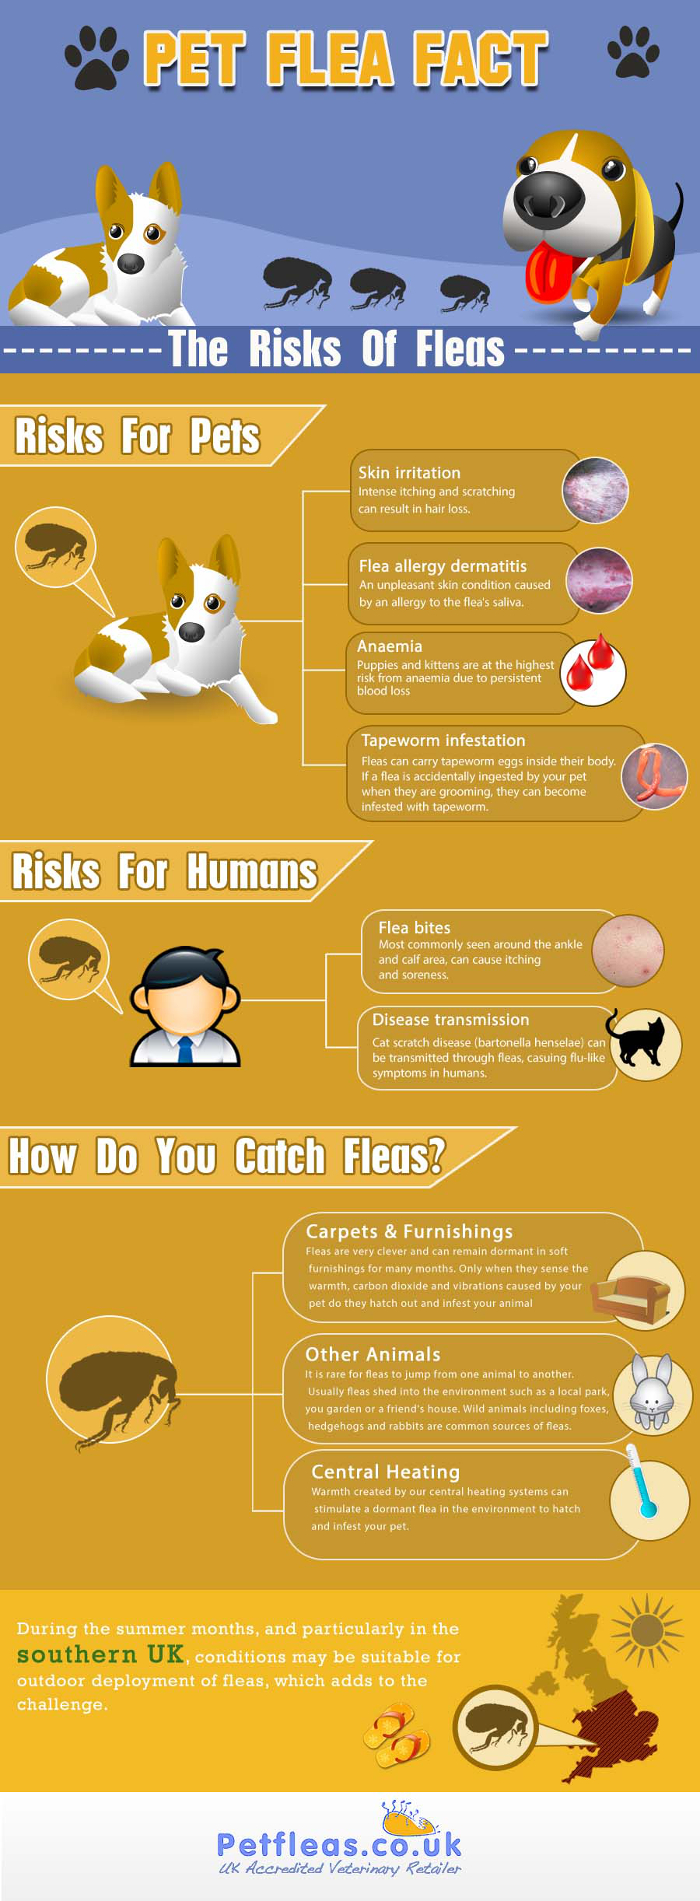 Pet Flea Facts The Risk Of Fleas